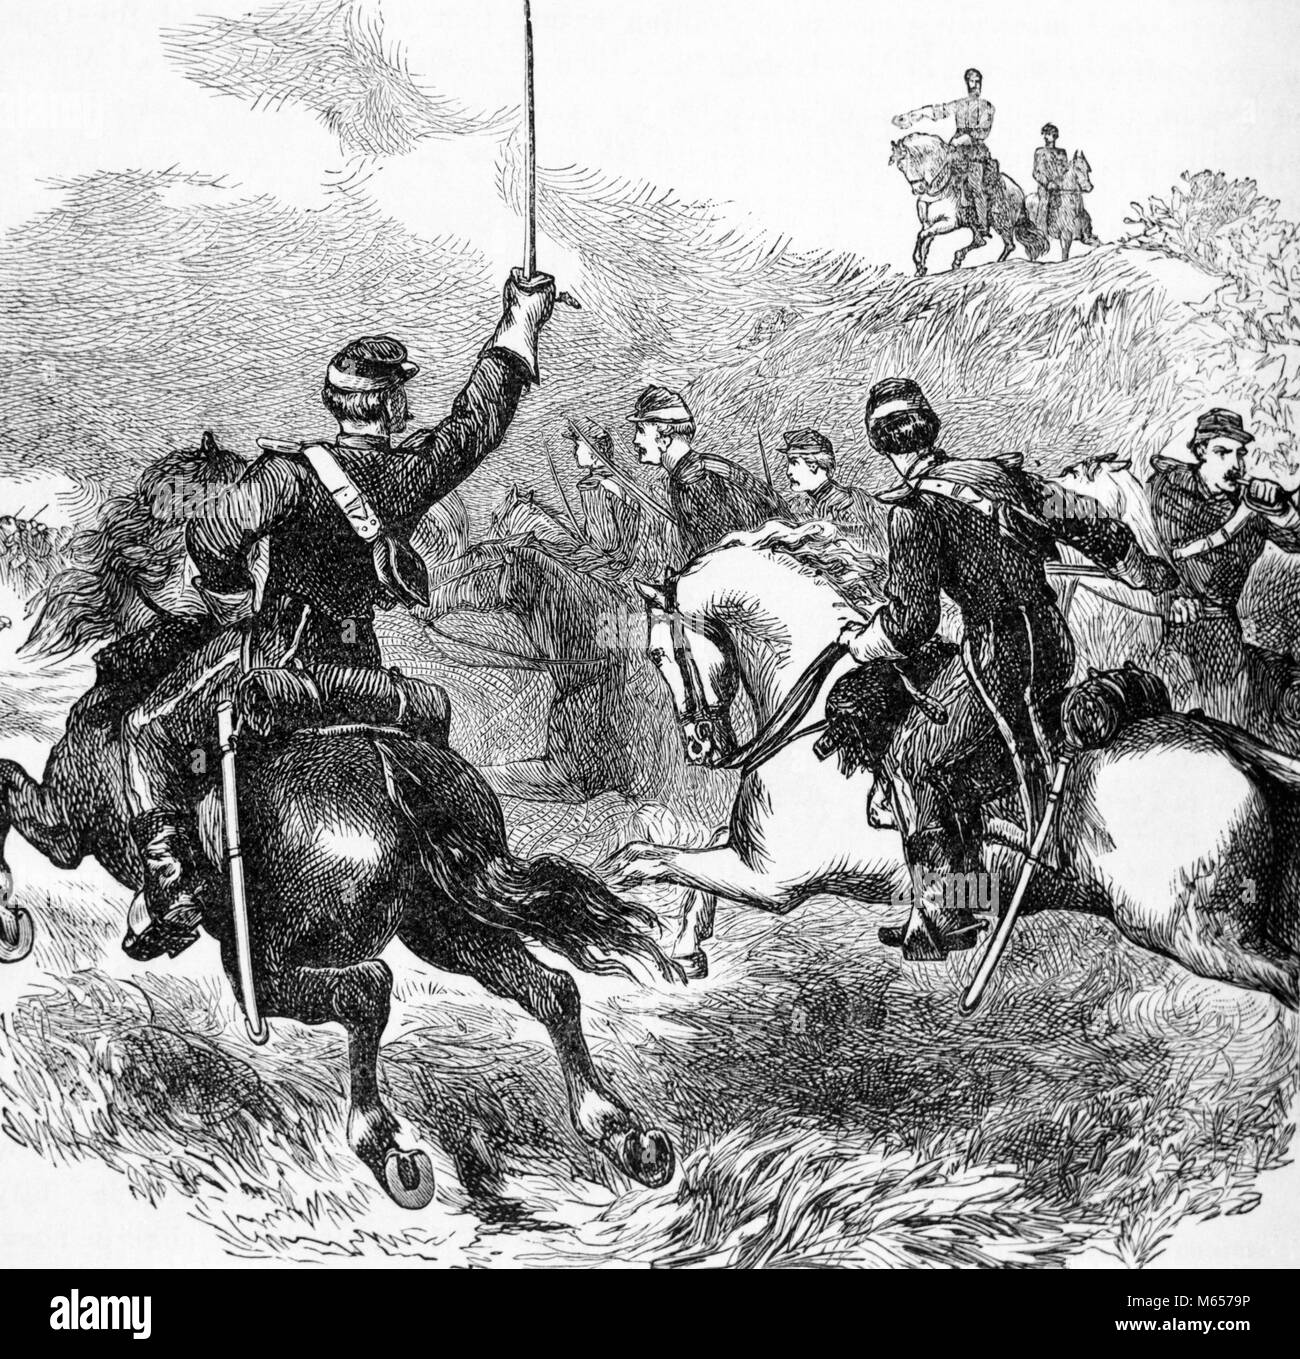 1860 AMERIKANISCHER BÜRGERKRIEG, GENERAL PHILIP SHERIDAN führenden Truppen am 19. Oktober 1864 CEDAR CREEK VIRGINIA USA-h9858 HAR 001 HARS KLEINE GRUPPE VON TIEREN OKTOBER SÄUGETIER 1864 AMERIKANISCHER BÜRGERKRIEG, B&W SCHLACHTEN SCHWARZ UND WEISS BÜRGERKRIEG KONFLIKTE CREEK GENERAL SHERIDAN 19. OKTOBER ALTMODISCHE PHIL PHILIP SHERIDAN SHERIDAN UNION TRUPPEN Stockfoto